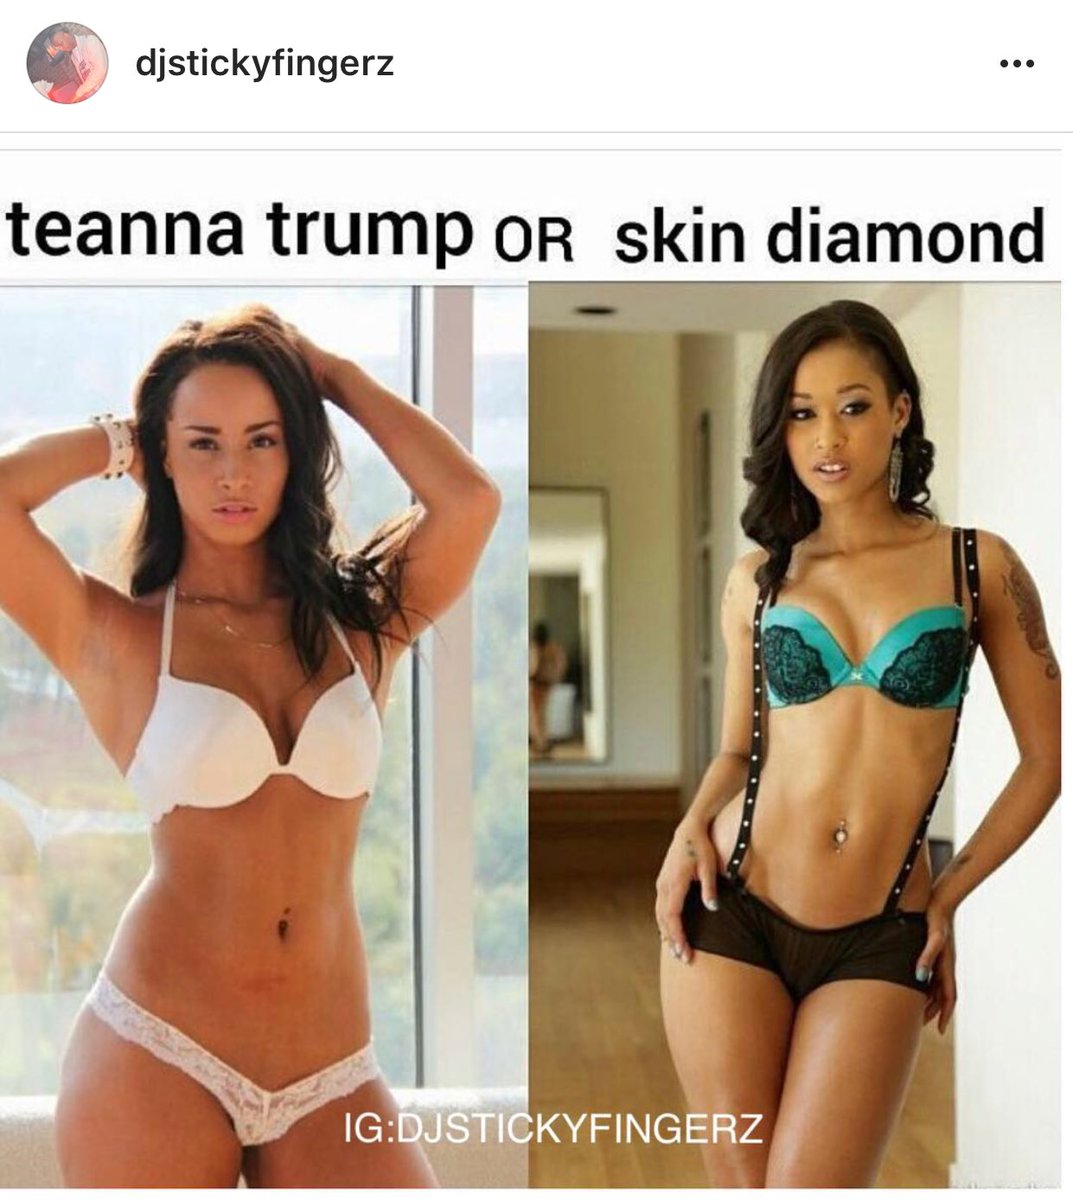 Friday Night Teannatrump Teanna Skin Pornhub Diamond Ebony Skindiamond Trump Sex Black